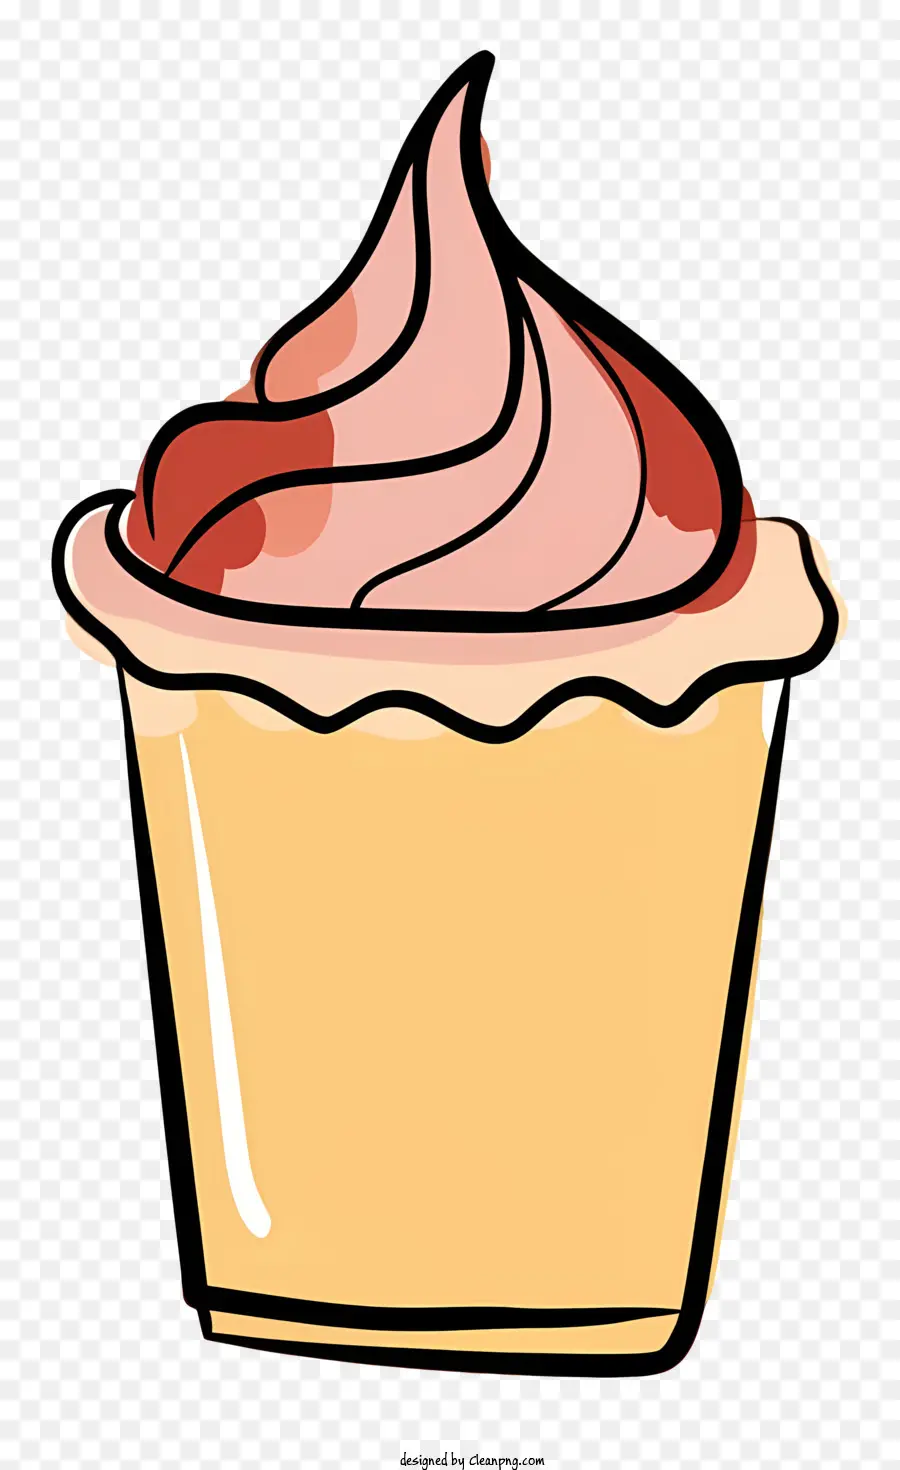 Streusel - Handgezogener rosa gefrorener Cupcake mit Puderzucker